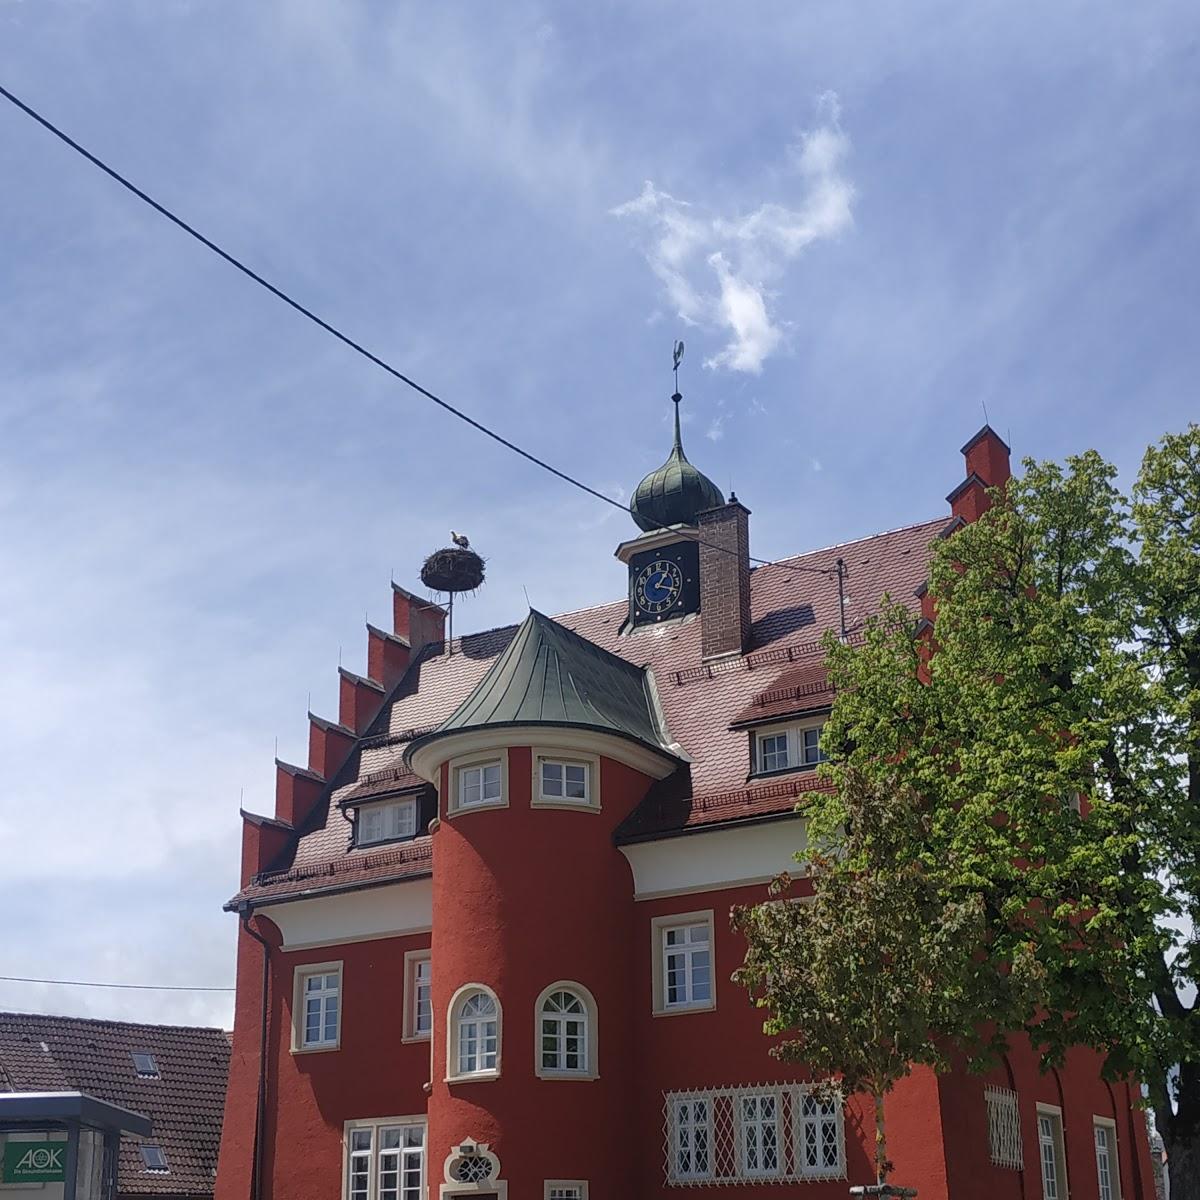 Restaurant "Gasthaus Adler" in Donaueschingen